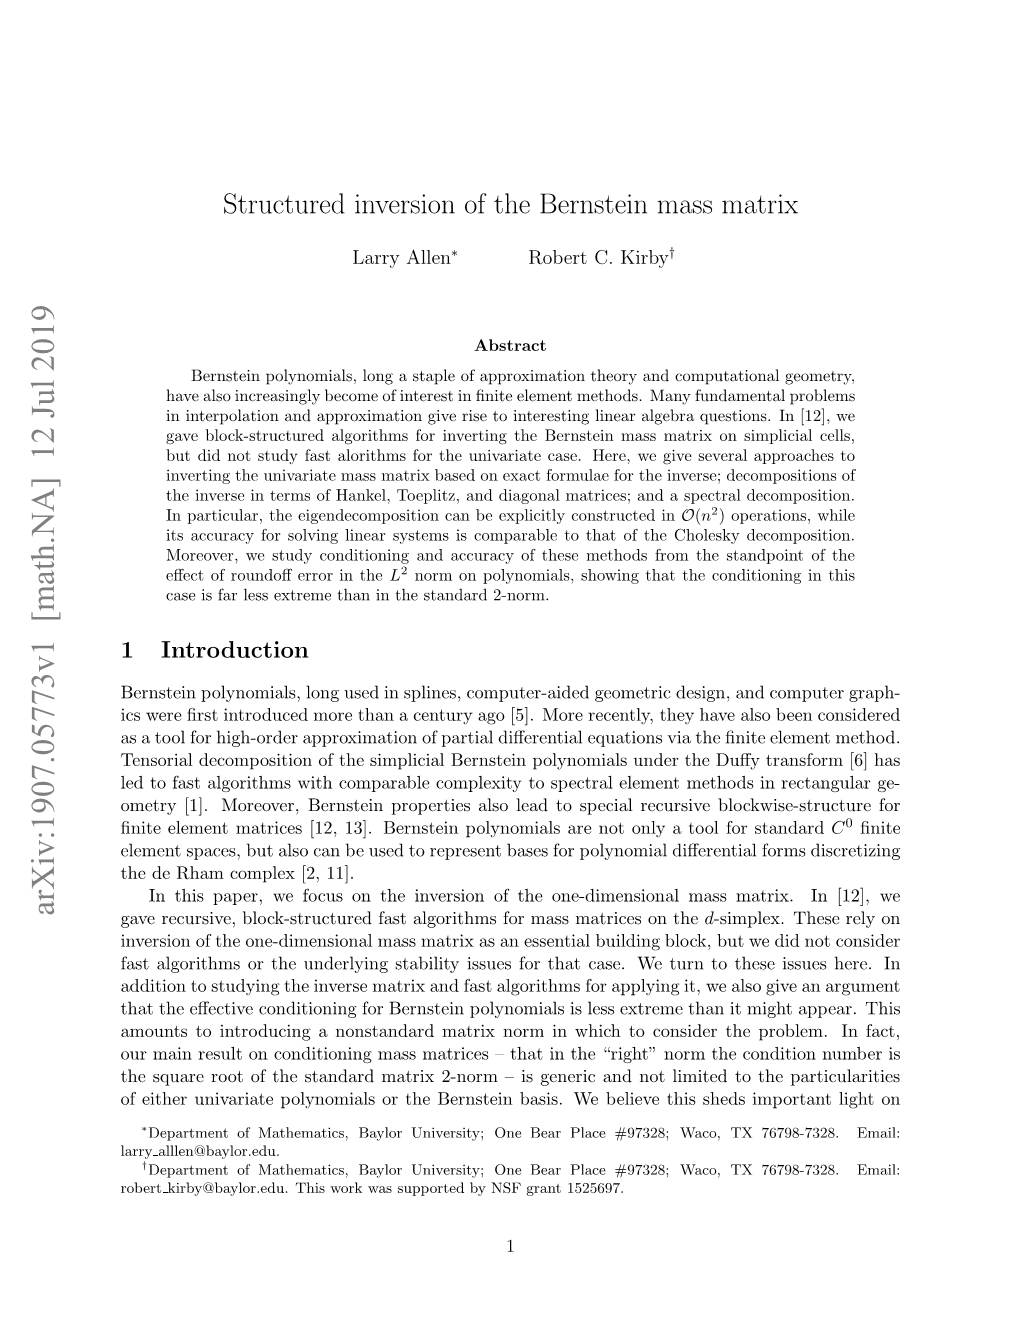 Structured Inversion of the Bernstein Mass Matrix